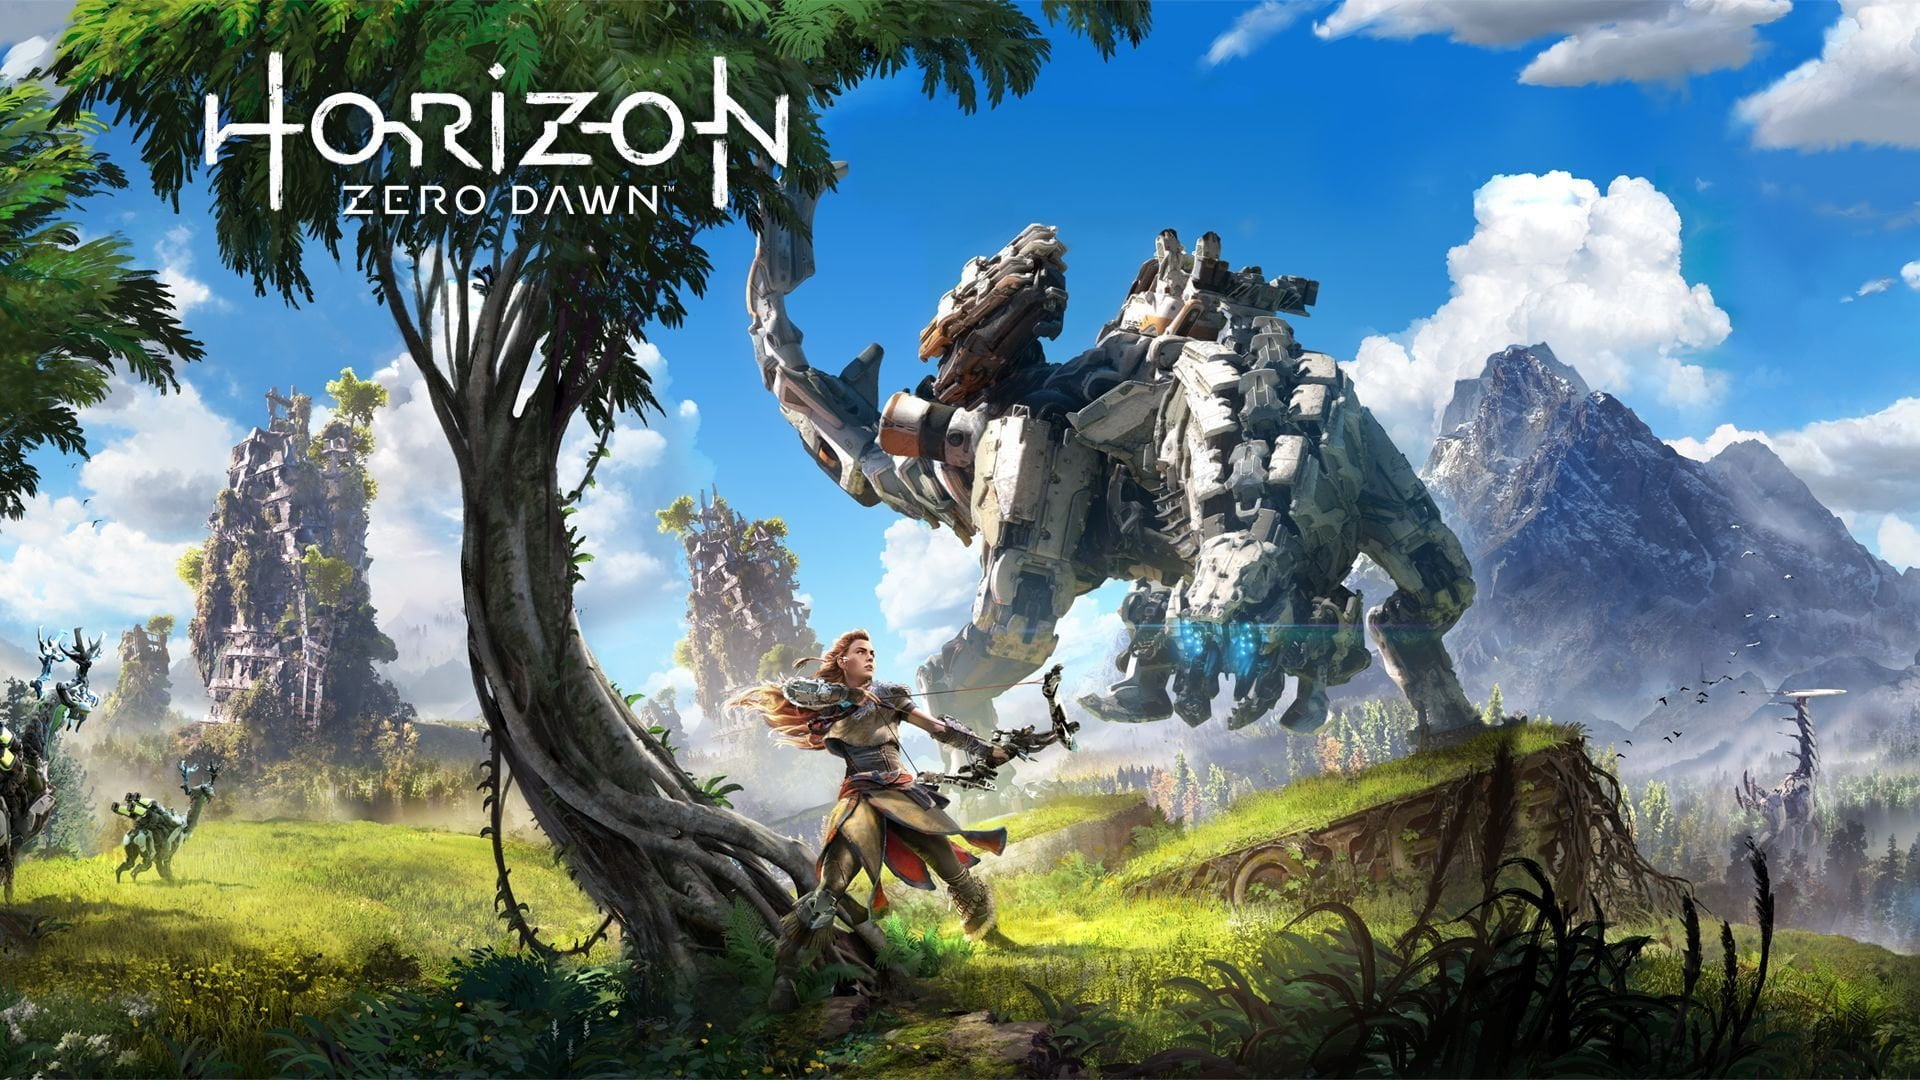 Horizon zero dawn: jogo chegará ao pc | thumb 1920 718467 | married games notícias | guerrilla games, horizon zero dawn, pc, playstation 4 | horizon zero dawn